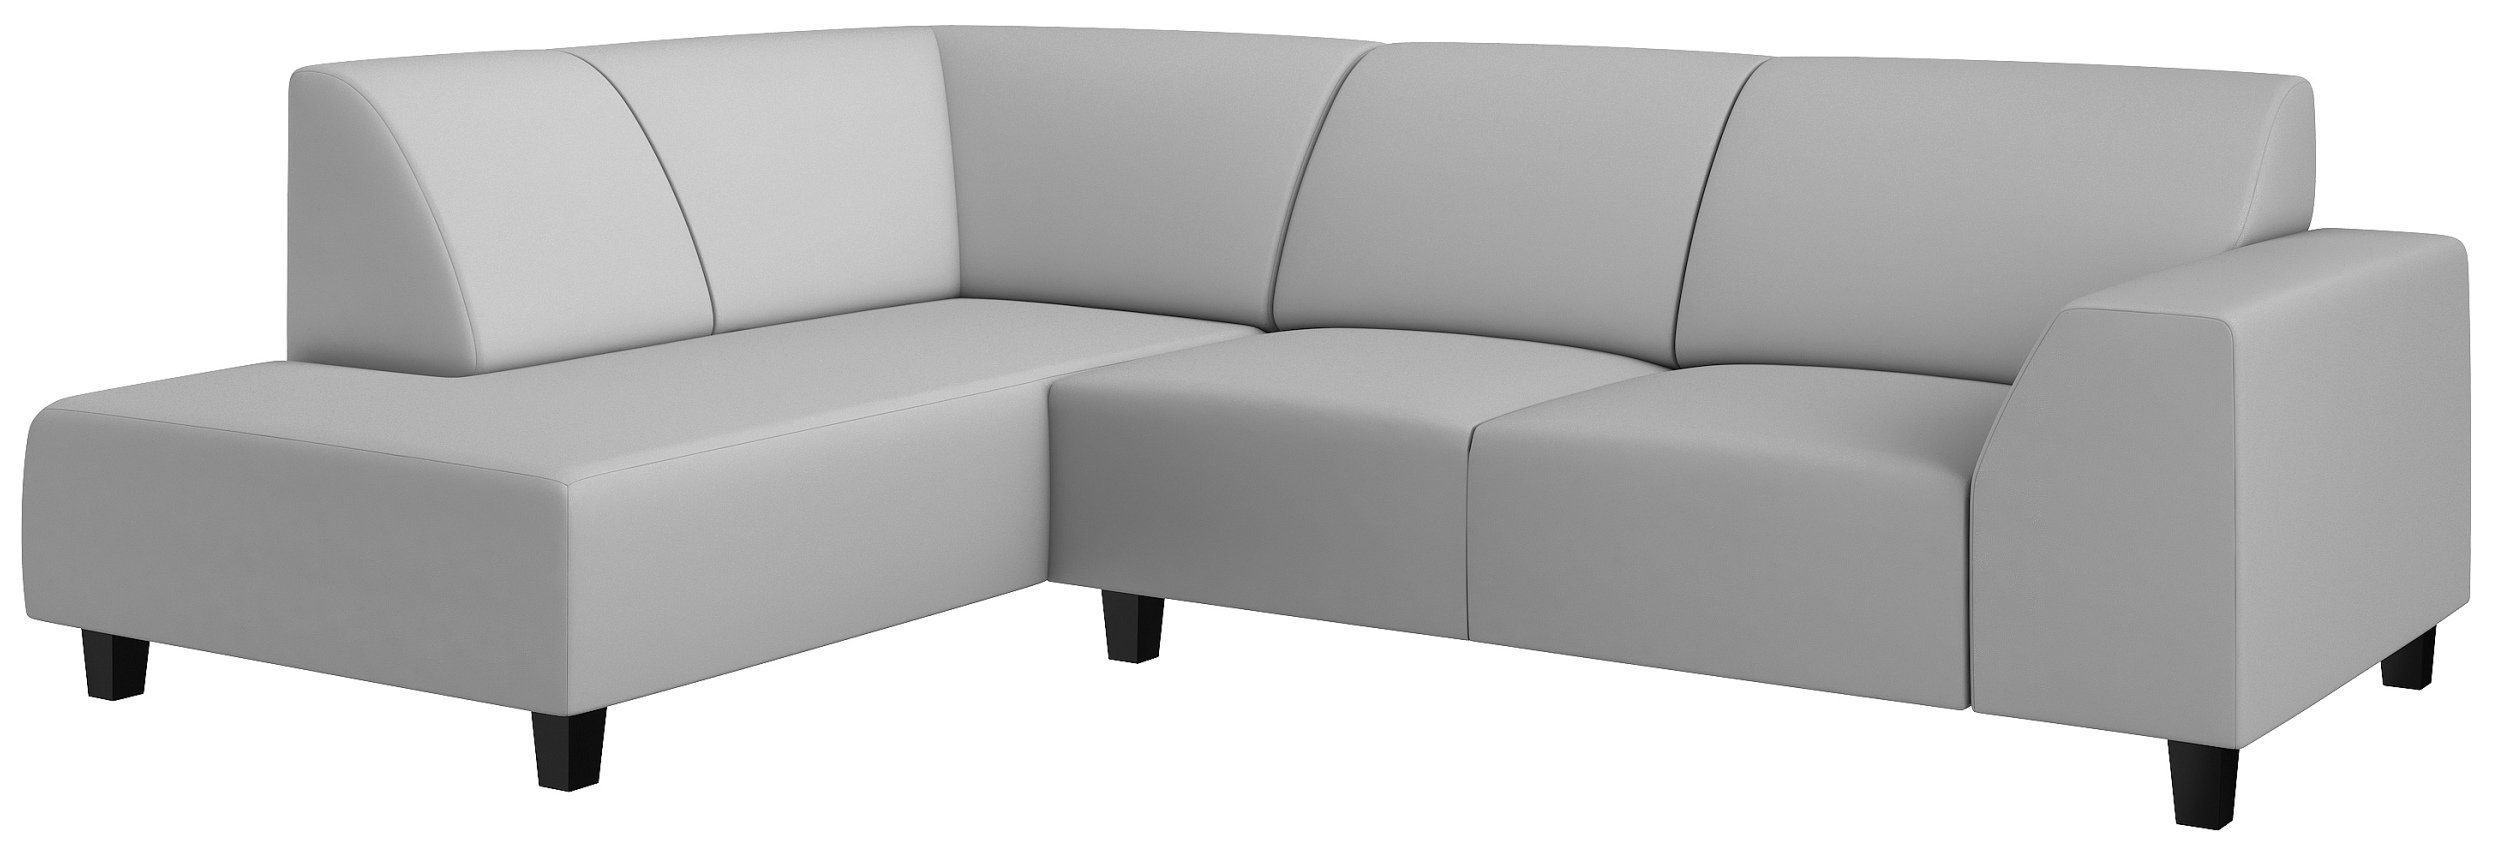 Raum stellbar, Einar, Modern Eckcouch, mit Ecksofa rechts mane links Design, Stylefy oder bestellbar, frei Sitzkomfort, im L-Form, Rückenlehne